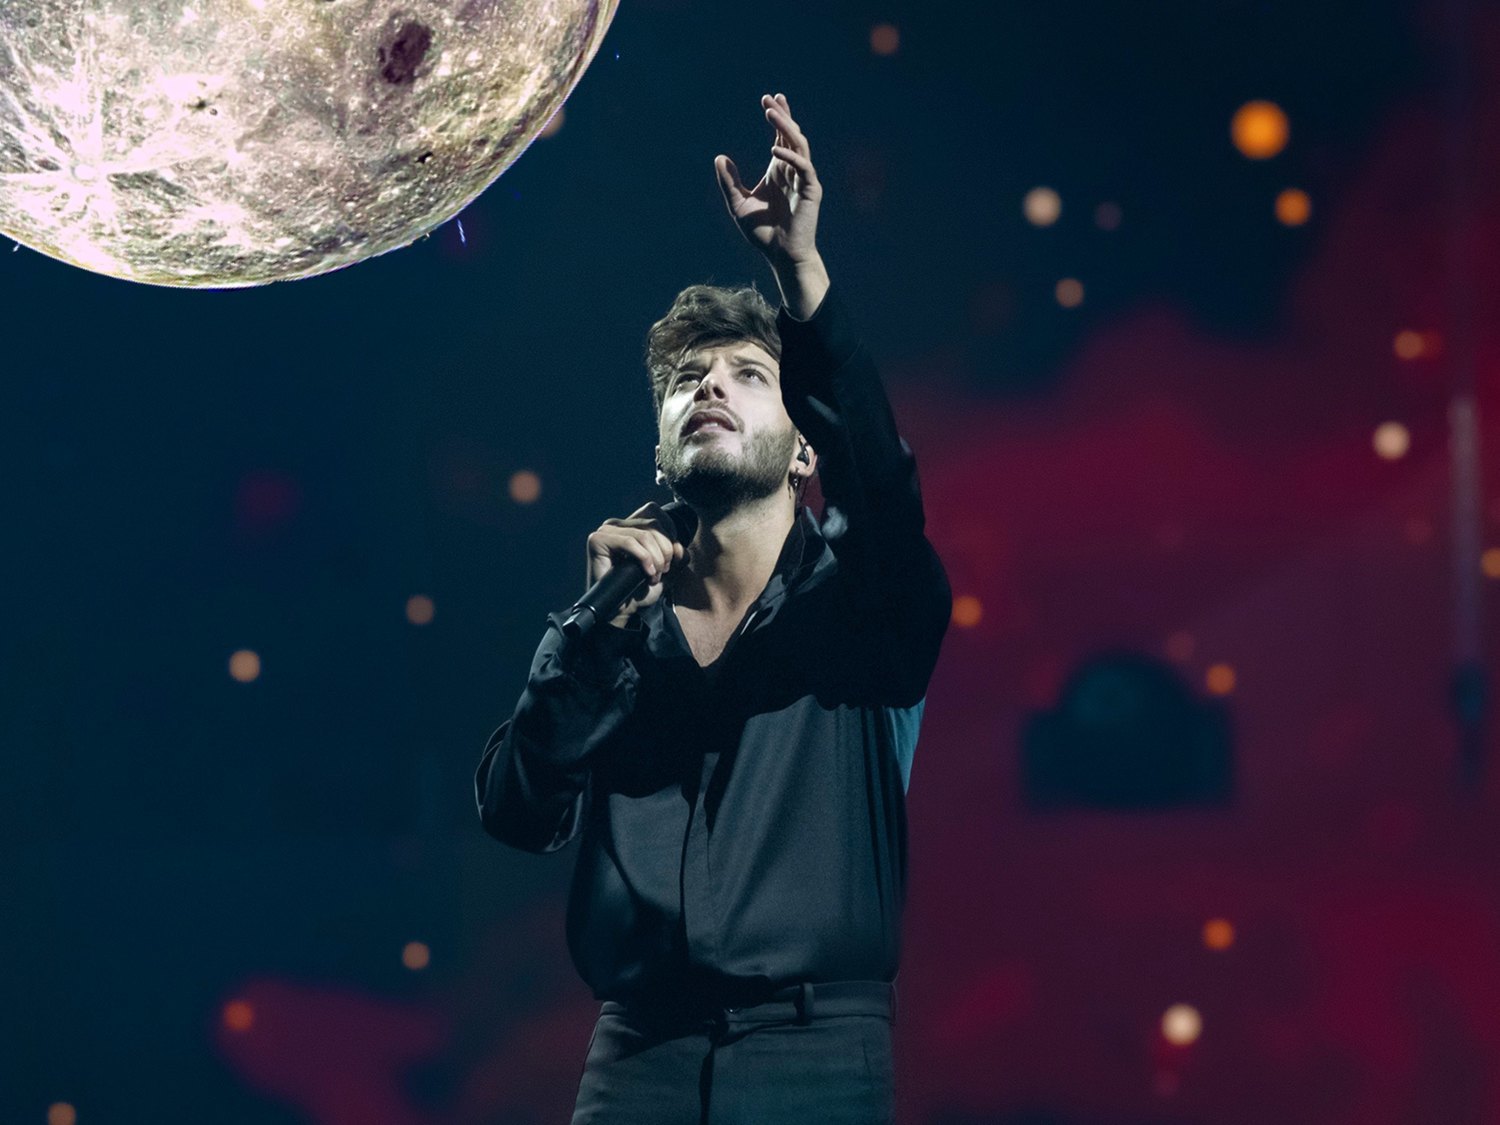 La propuesta de Blas Cantó en Eurovisión 2021 sale reforzada tras su segundo ensayo